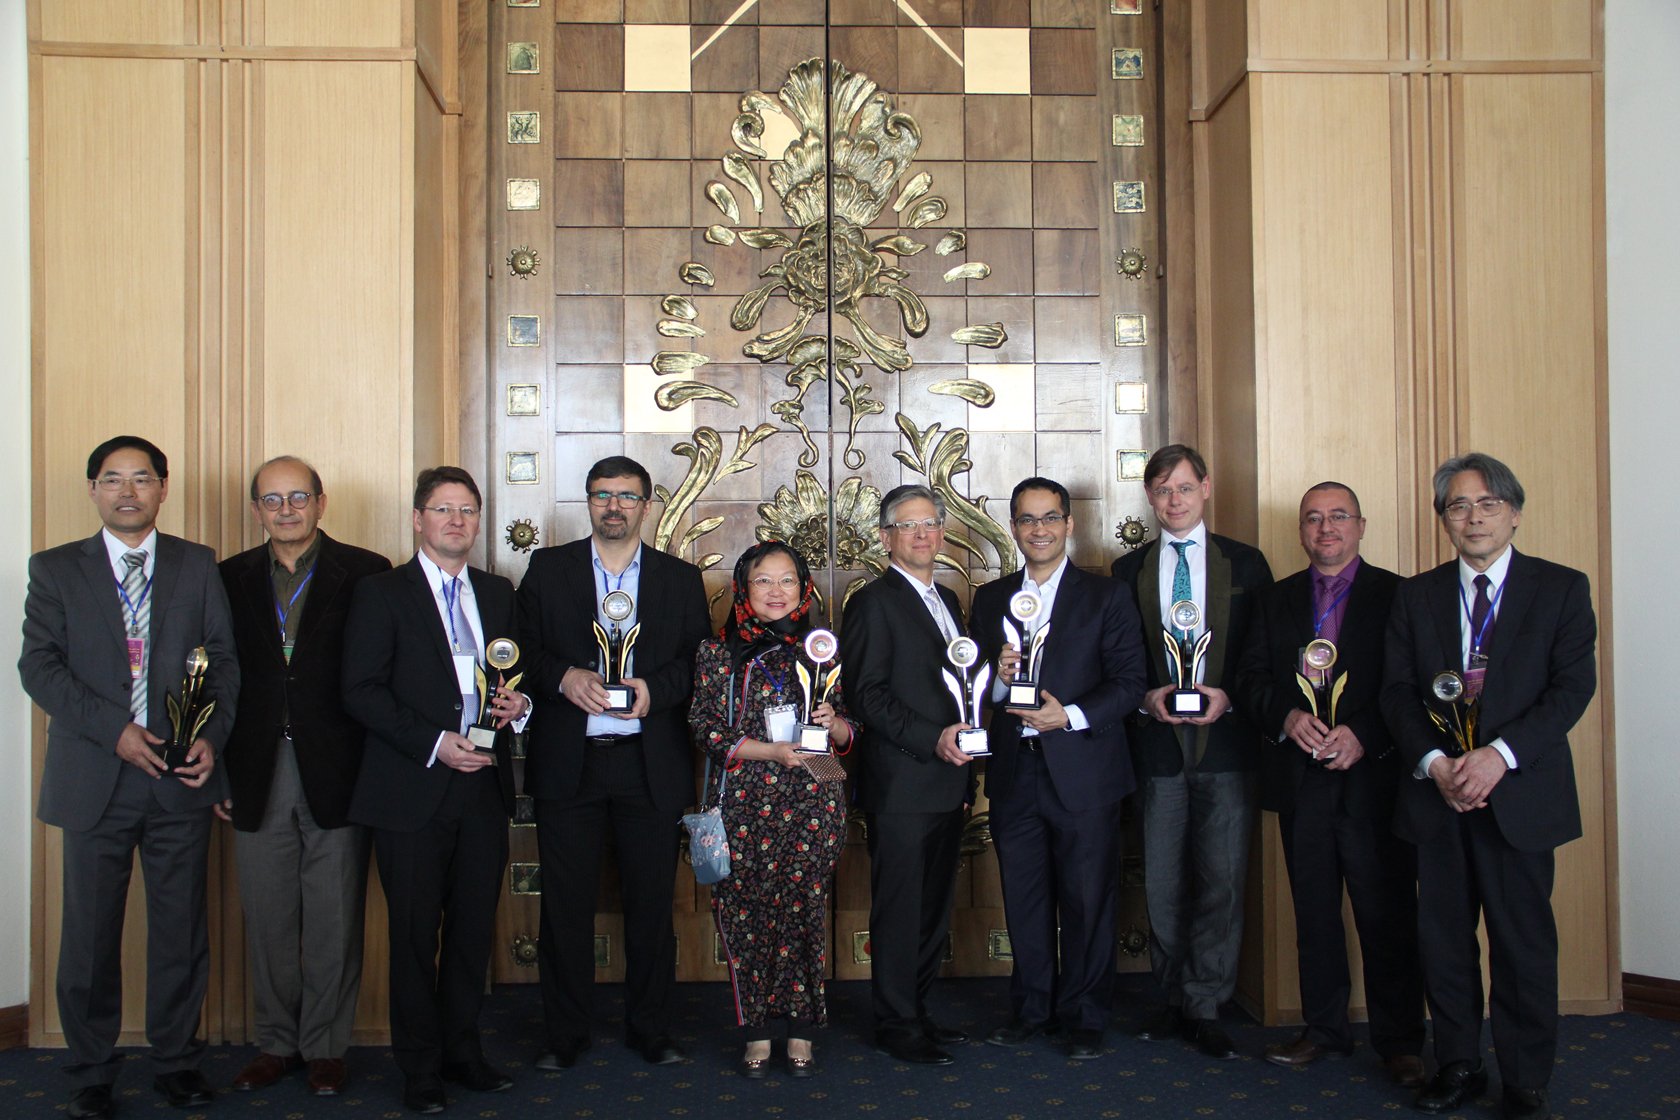 Professor Zhao (Left) and other Laureates. Image courtesy: Khwarizmi International Award